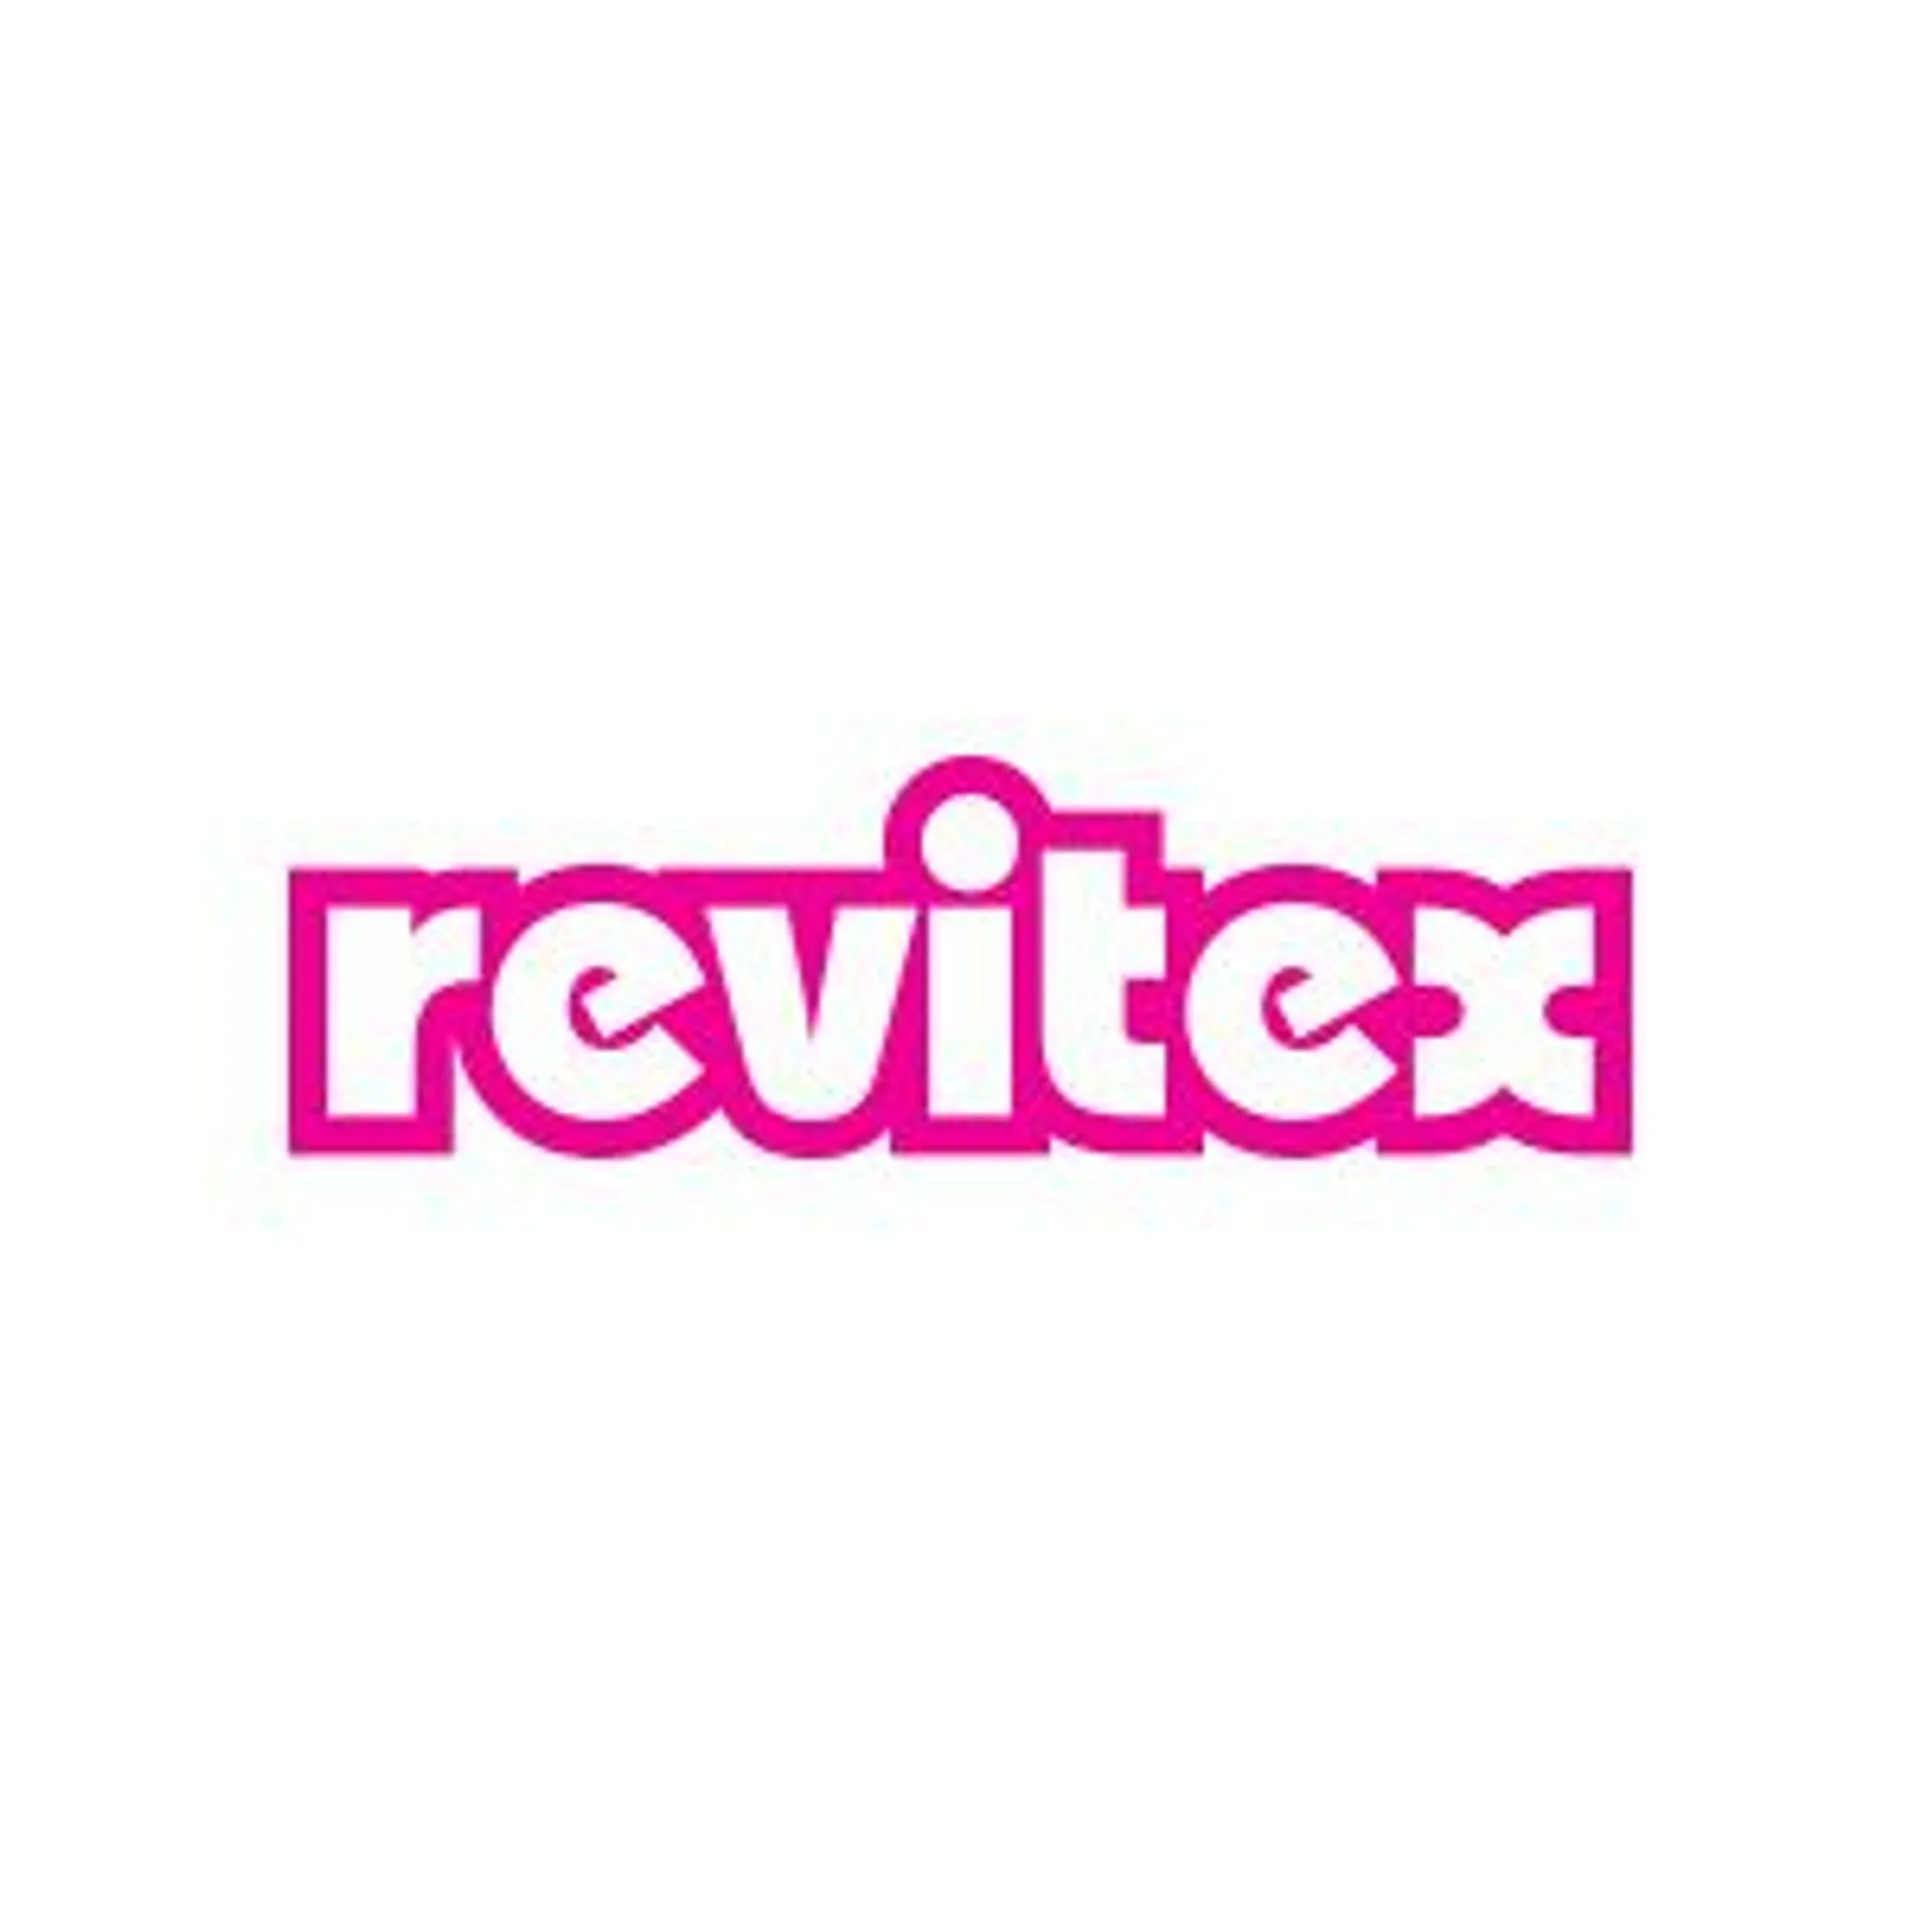 REVITEX logo